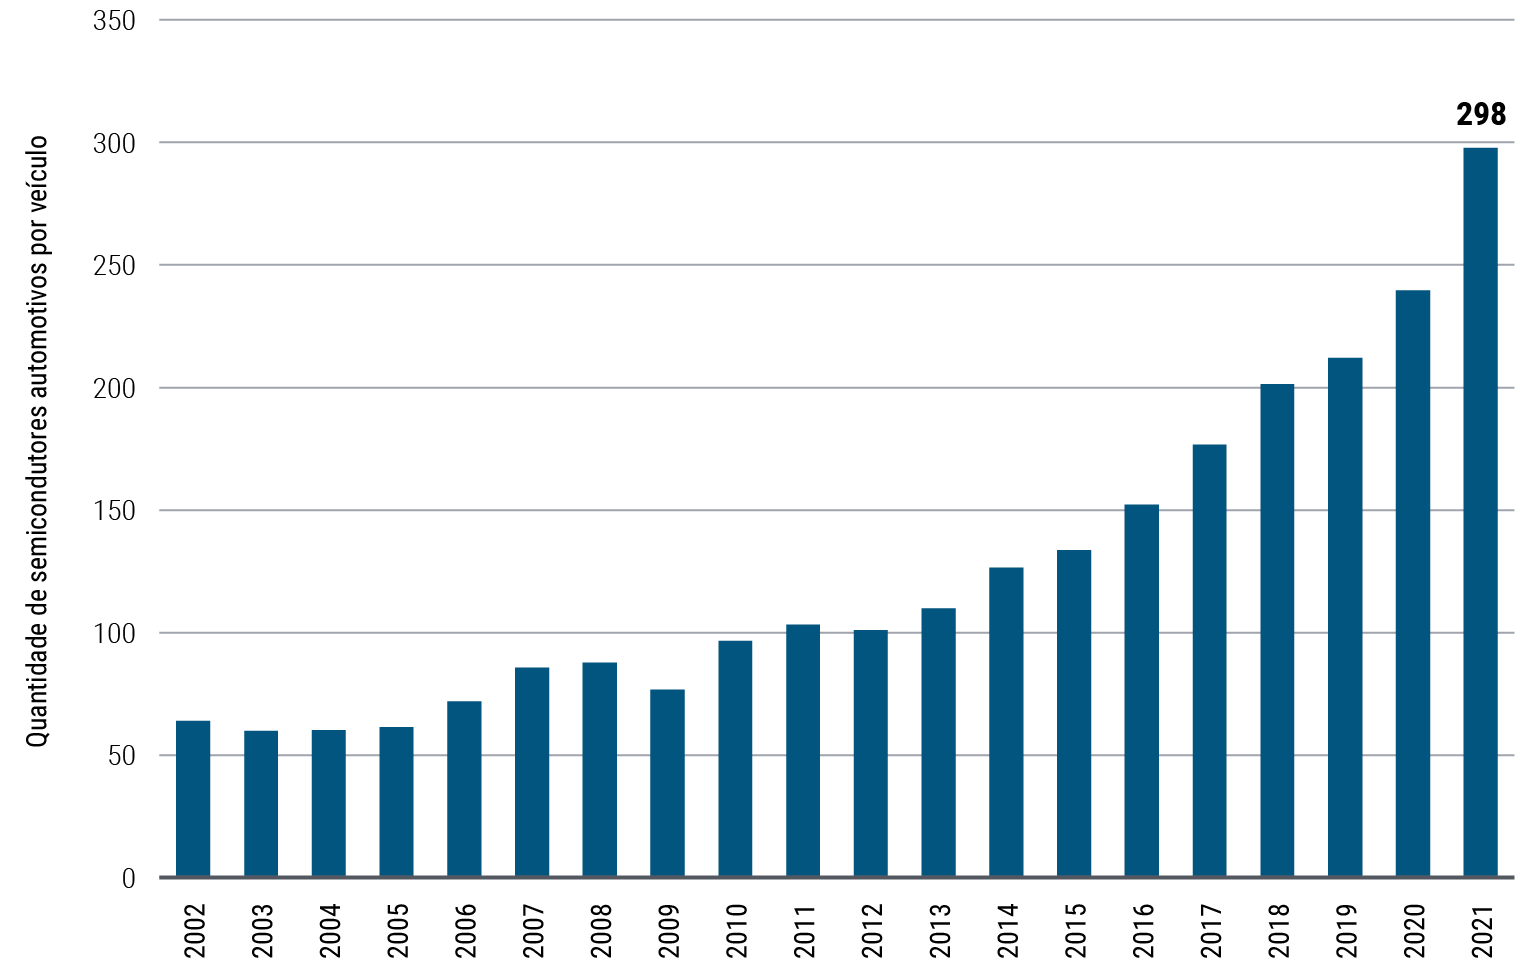 A Figura 2 é um gráfico de barras que mostra a quantidade média anual de semicondutores automotivos por veículo de 2002 a 2021. Nesse período, esse número aumentou de 64 para 298, com o maior aumento anual entre 2020 e 2021. As unidades refletem as remessas globais de microprocessadores e semicondutores analógicos automotivos, divididas pela produção mundial de veículos leves. Os dados de 2021 refletem os três primeiros trimestres anualizados.